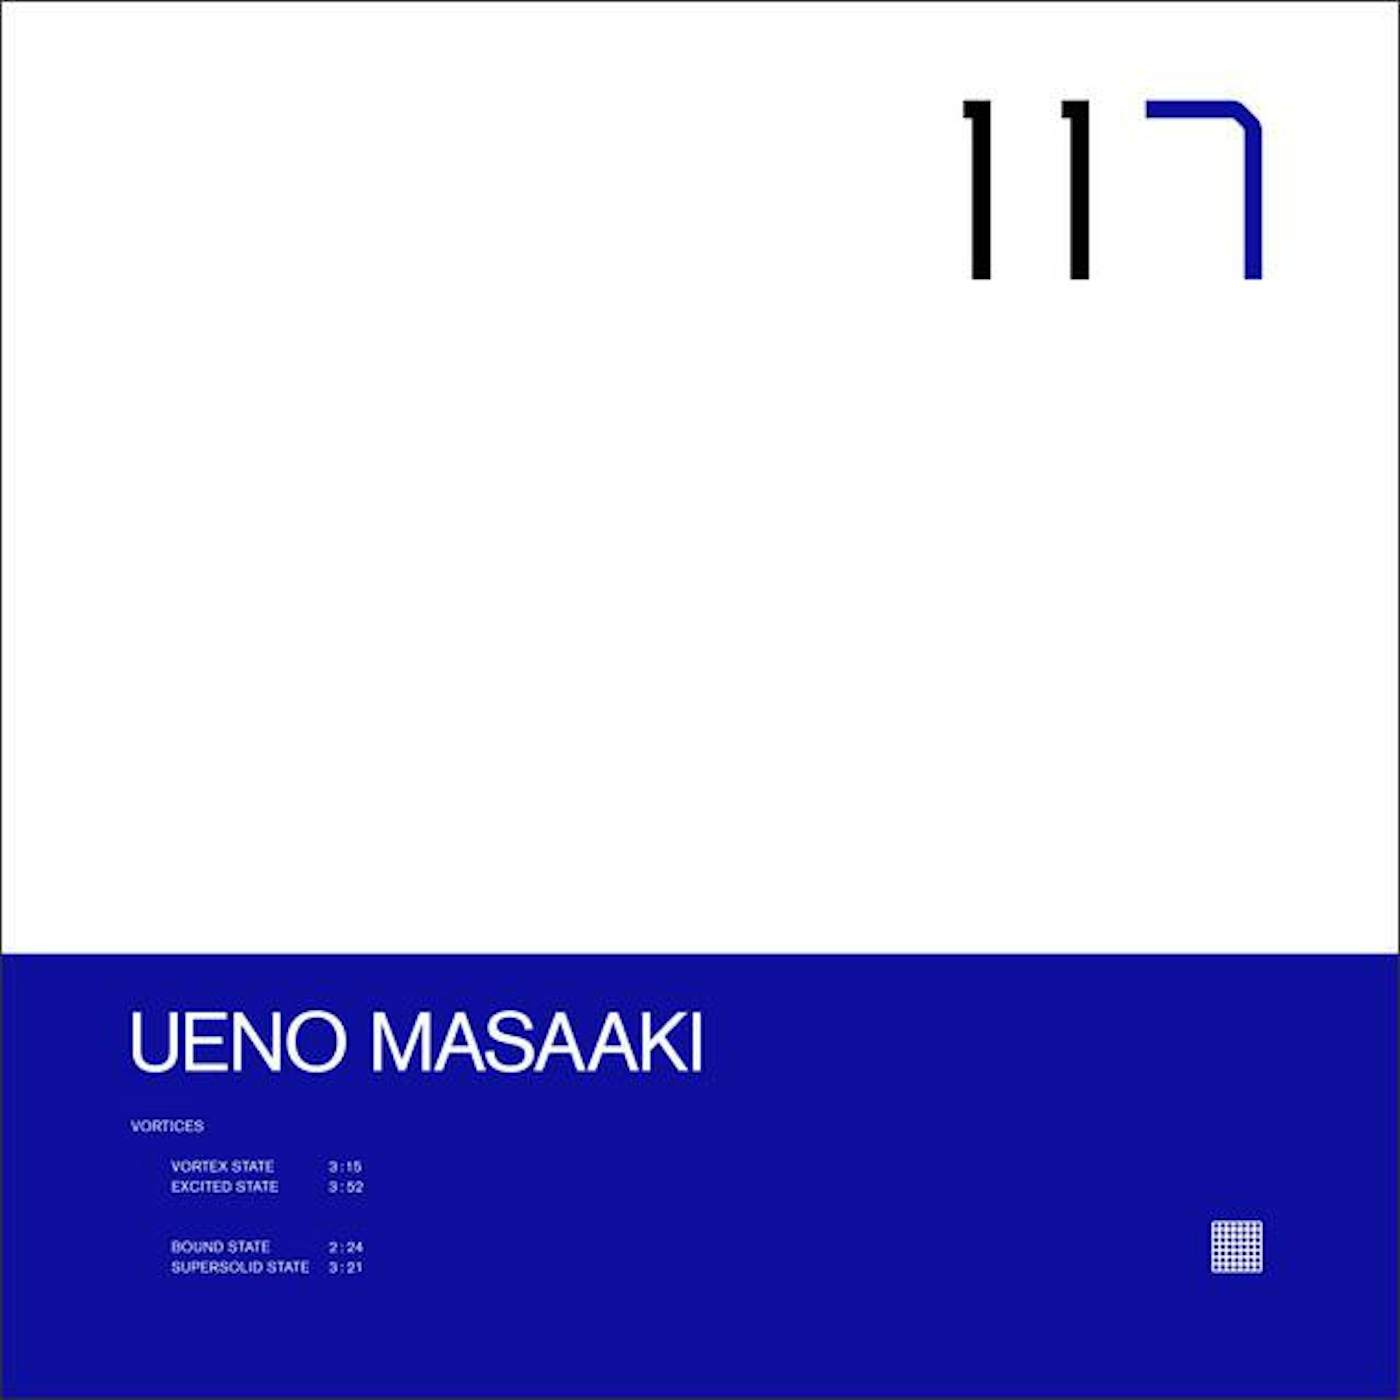 Ueno Masaaki